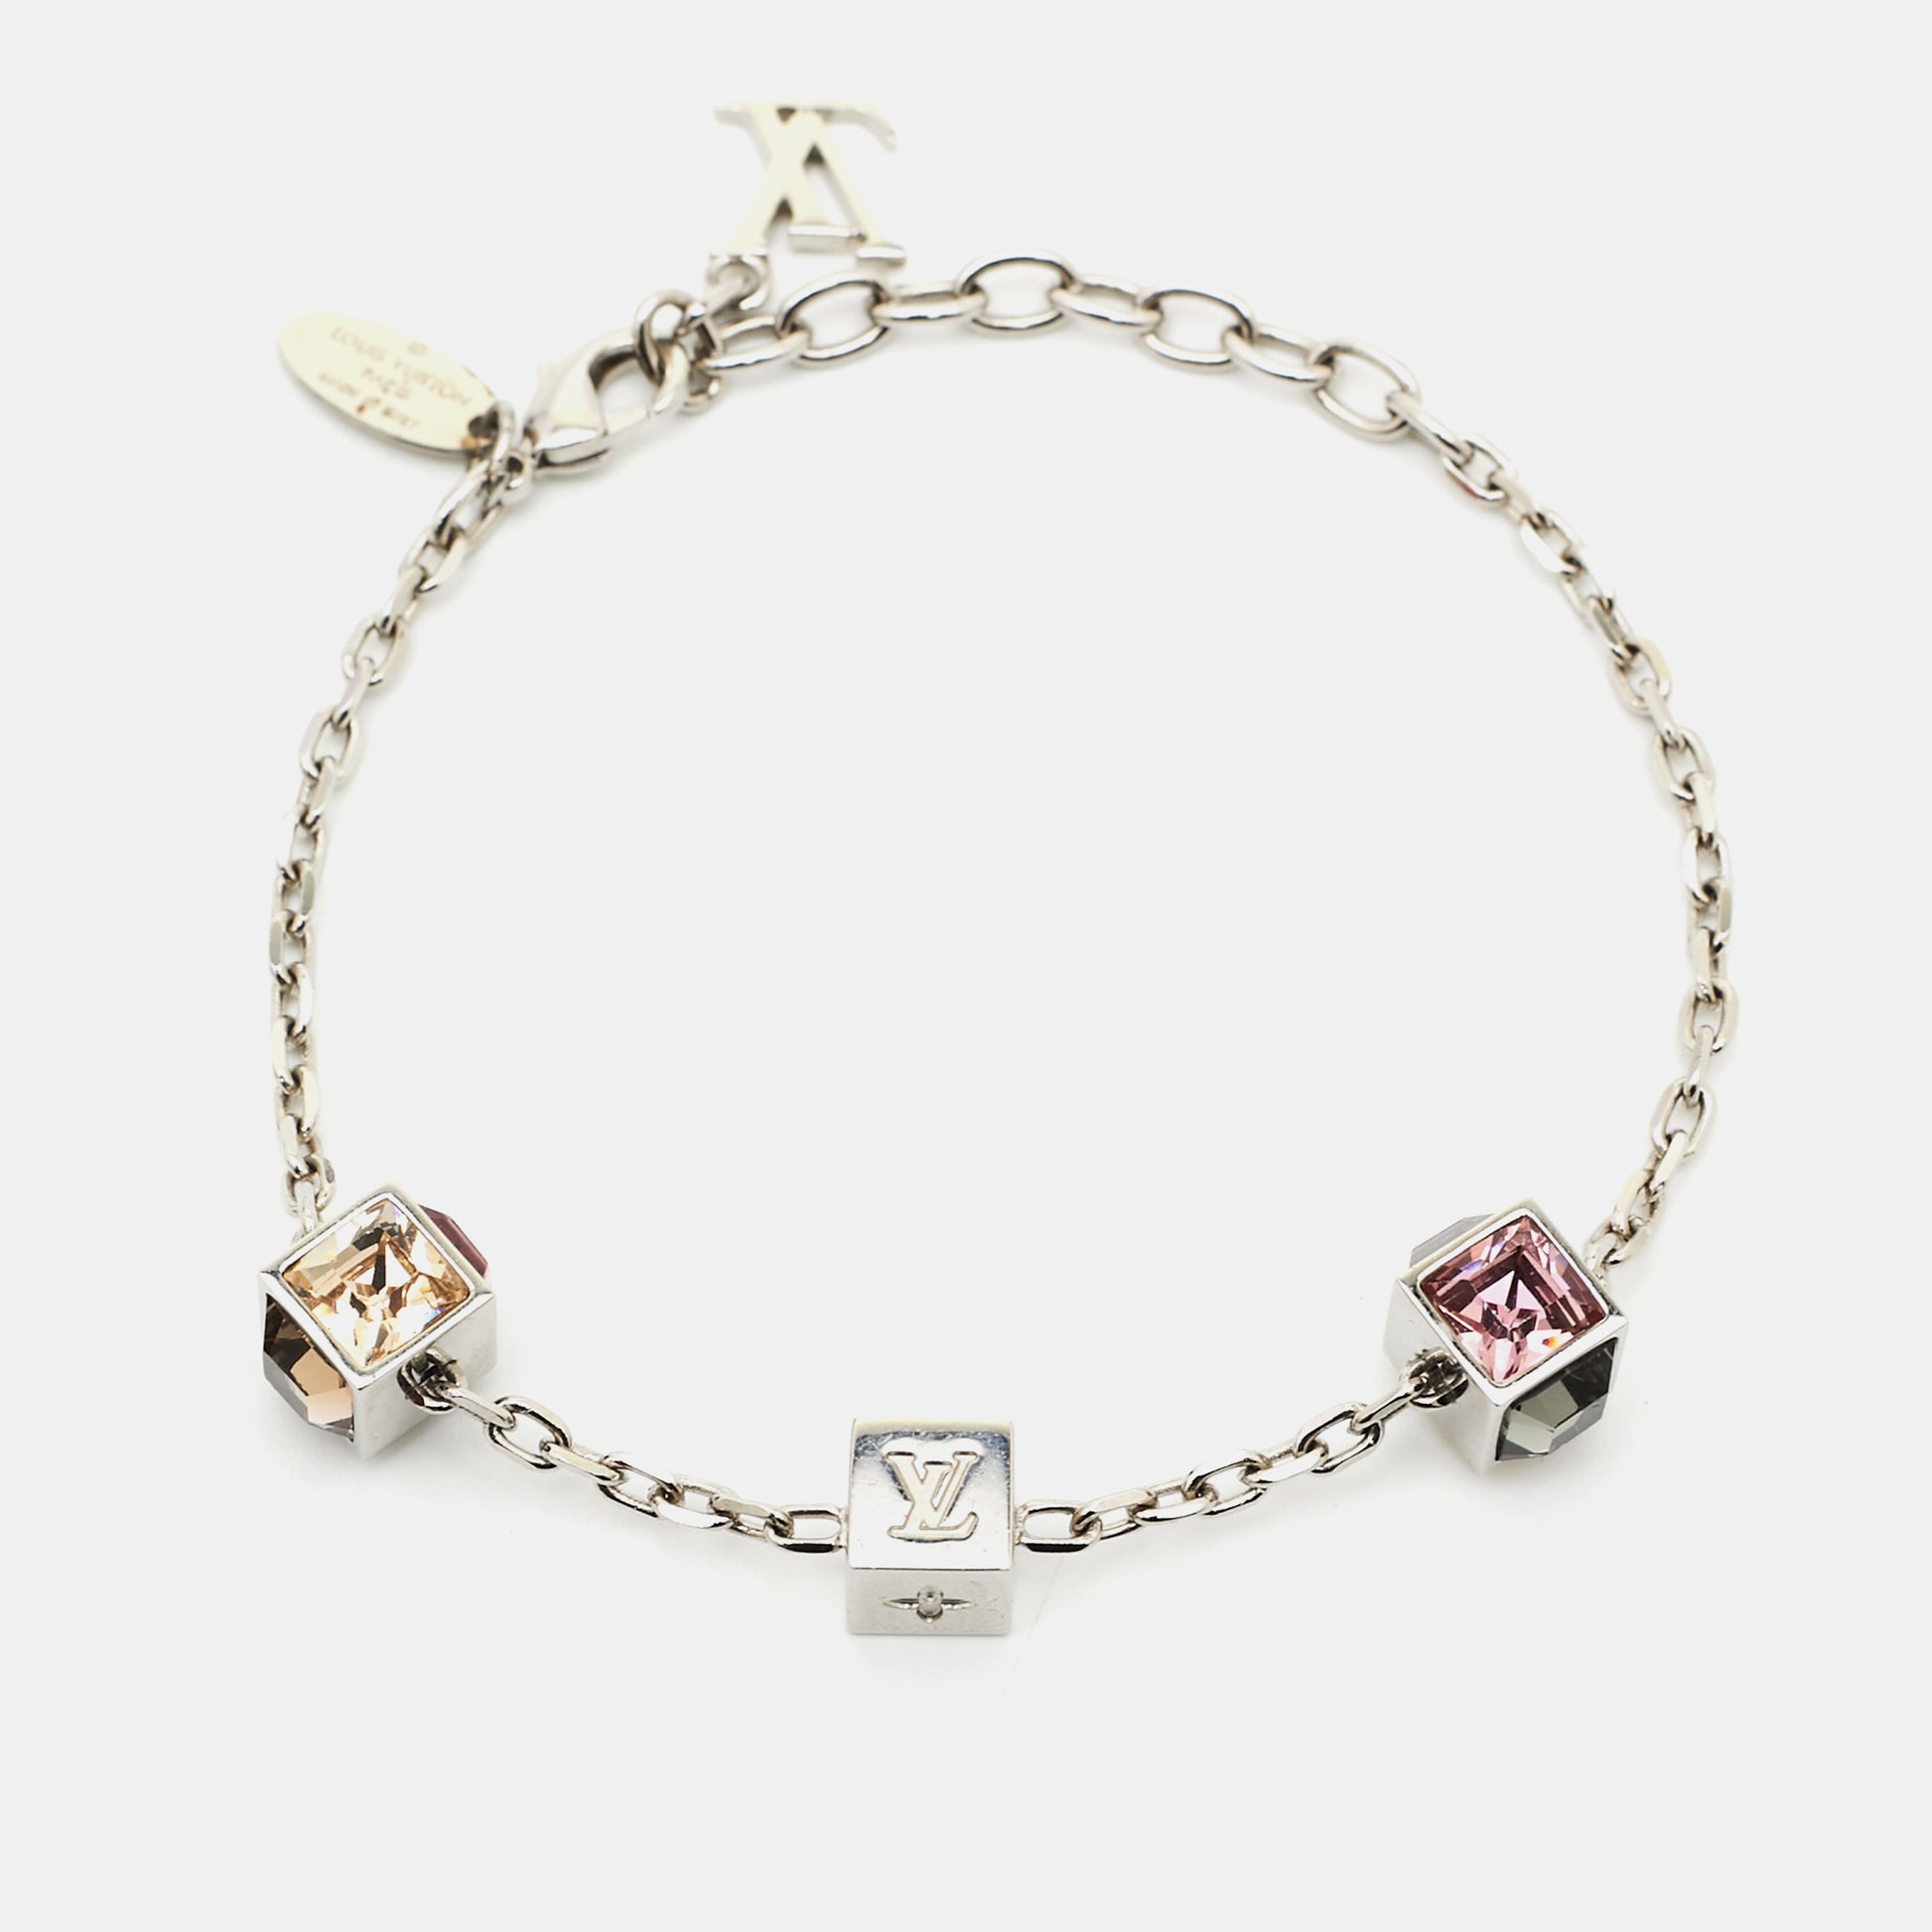 Louis Vuitton Silver Tone Gamble Crystal Bracelet